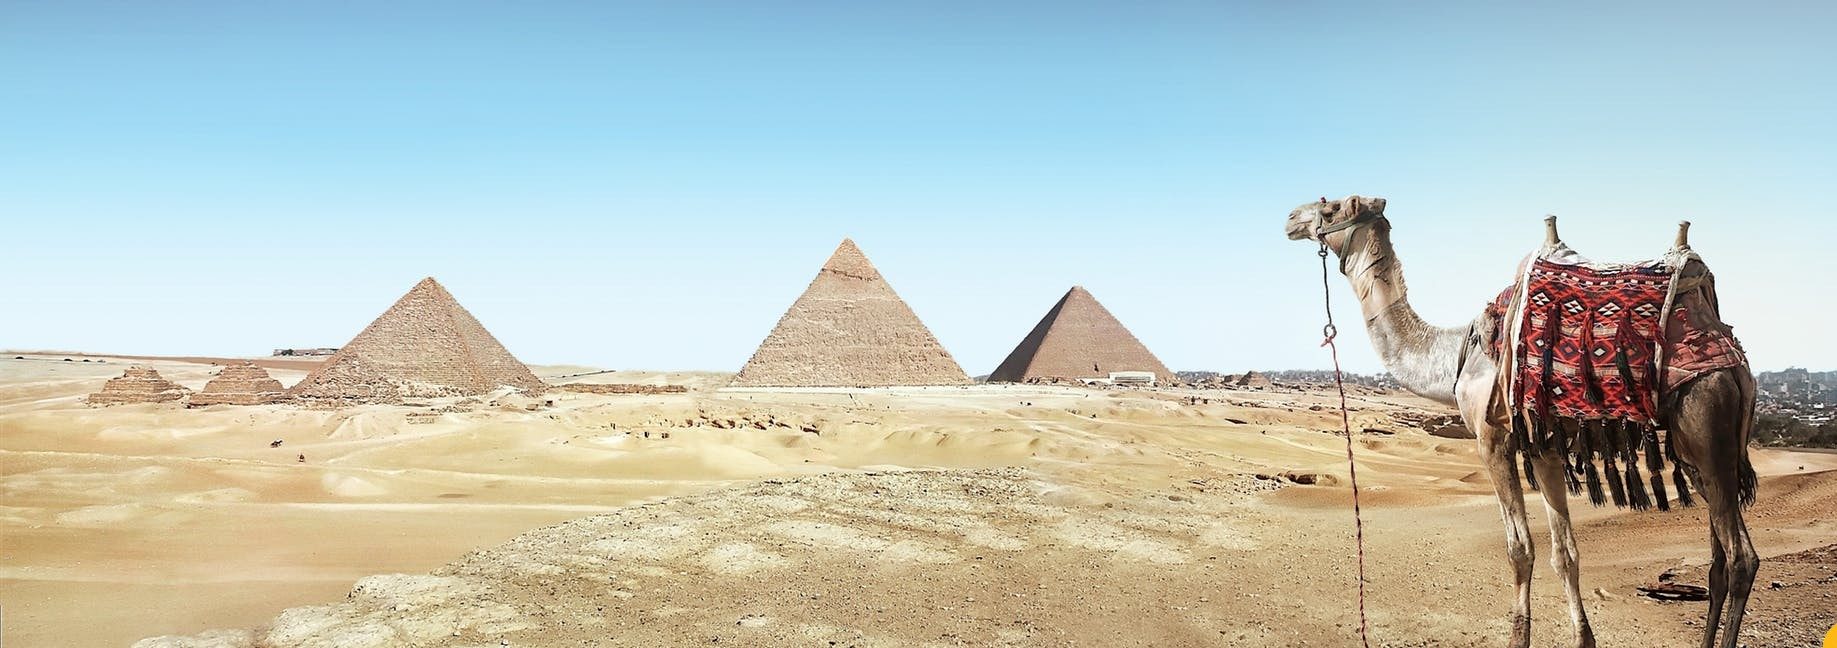 Ερμηνεία του να βλέπεις έναν Αιγύπτιο σε όνειρο - Ερμηνεία ονείρων στο διαδίκτυο